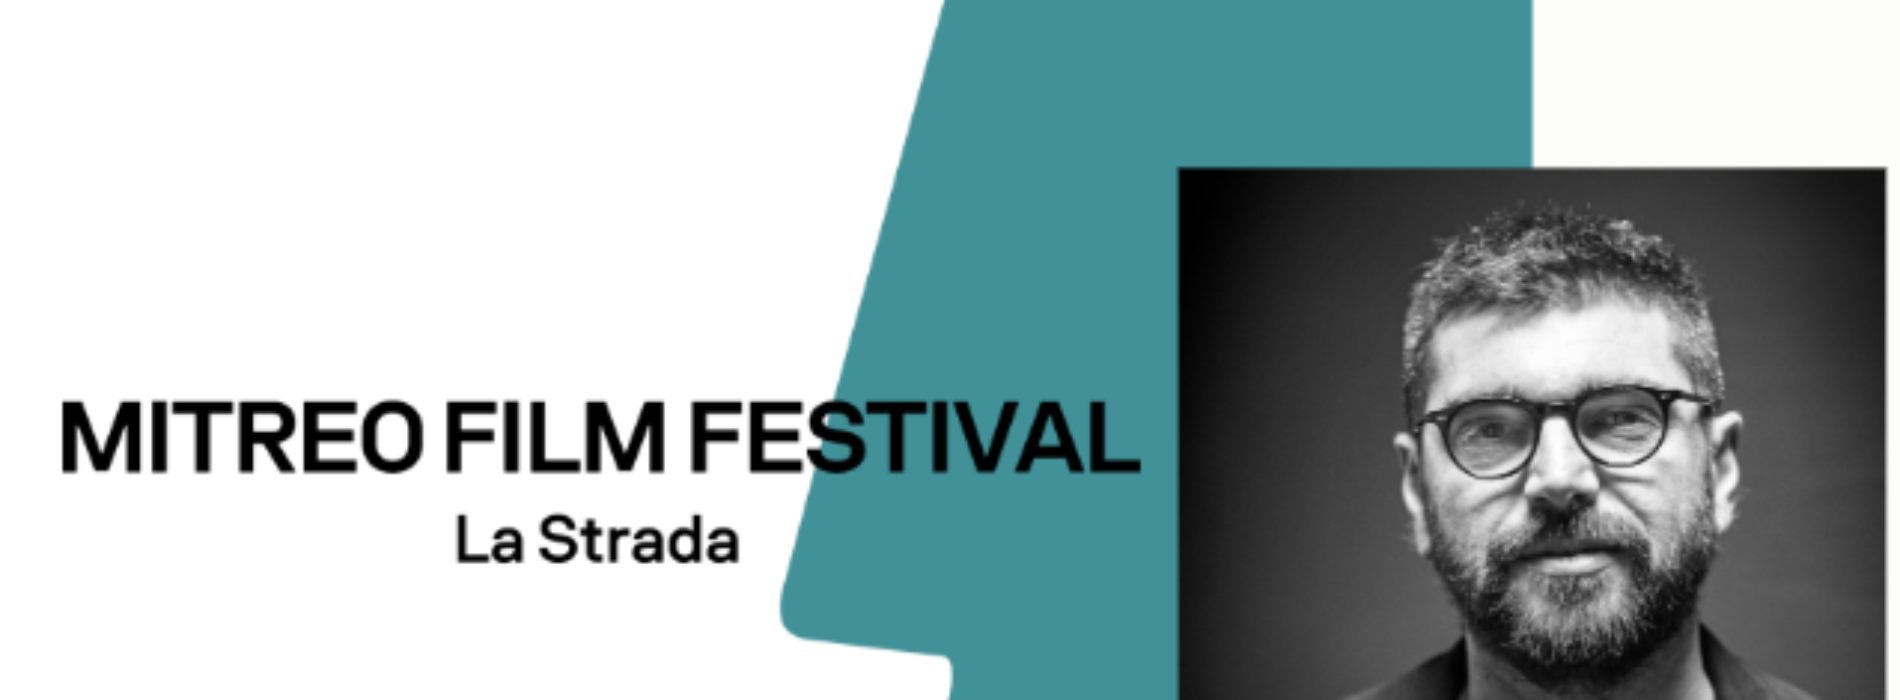 Mitreo Film Festival, riparte la rassegna firmata Toni D’Angelo